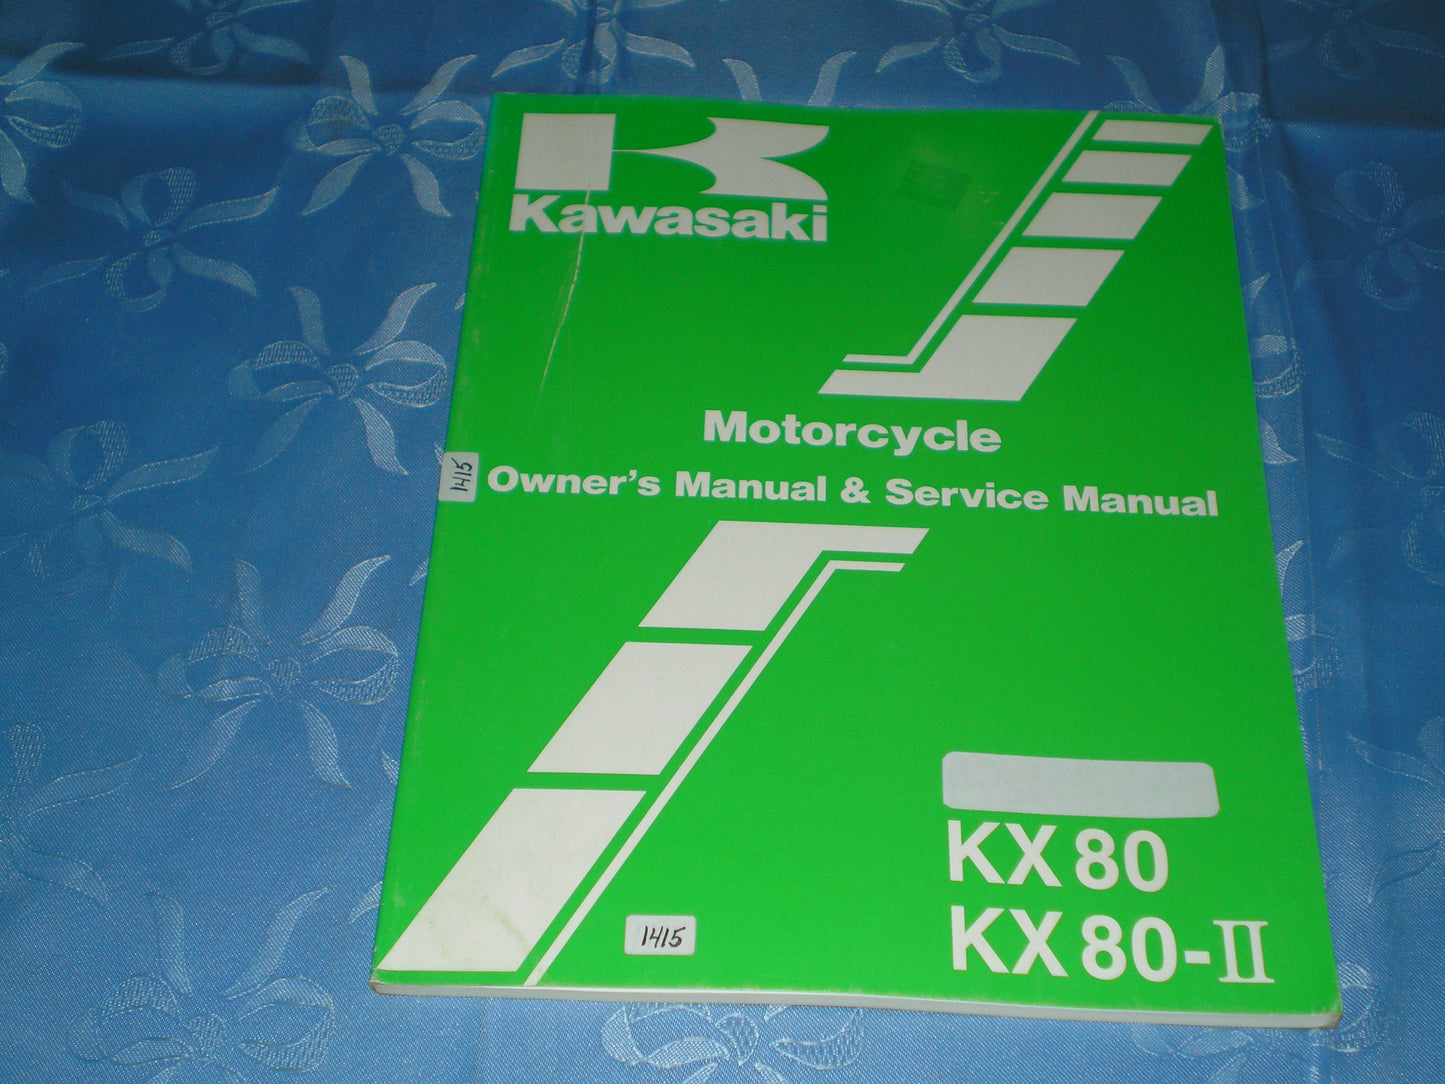 KAWASAKI KX80  KX80-II  1987  Owner's & Service Manual  99920-1368-01  #1415